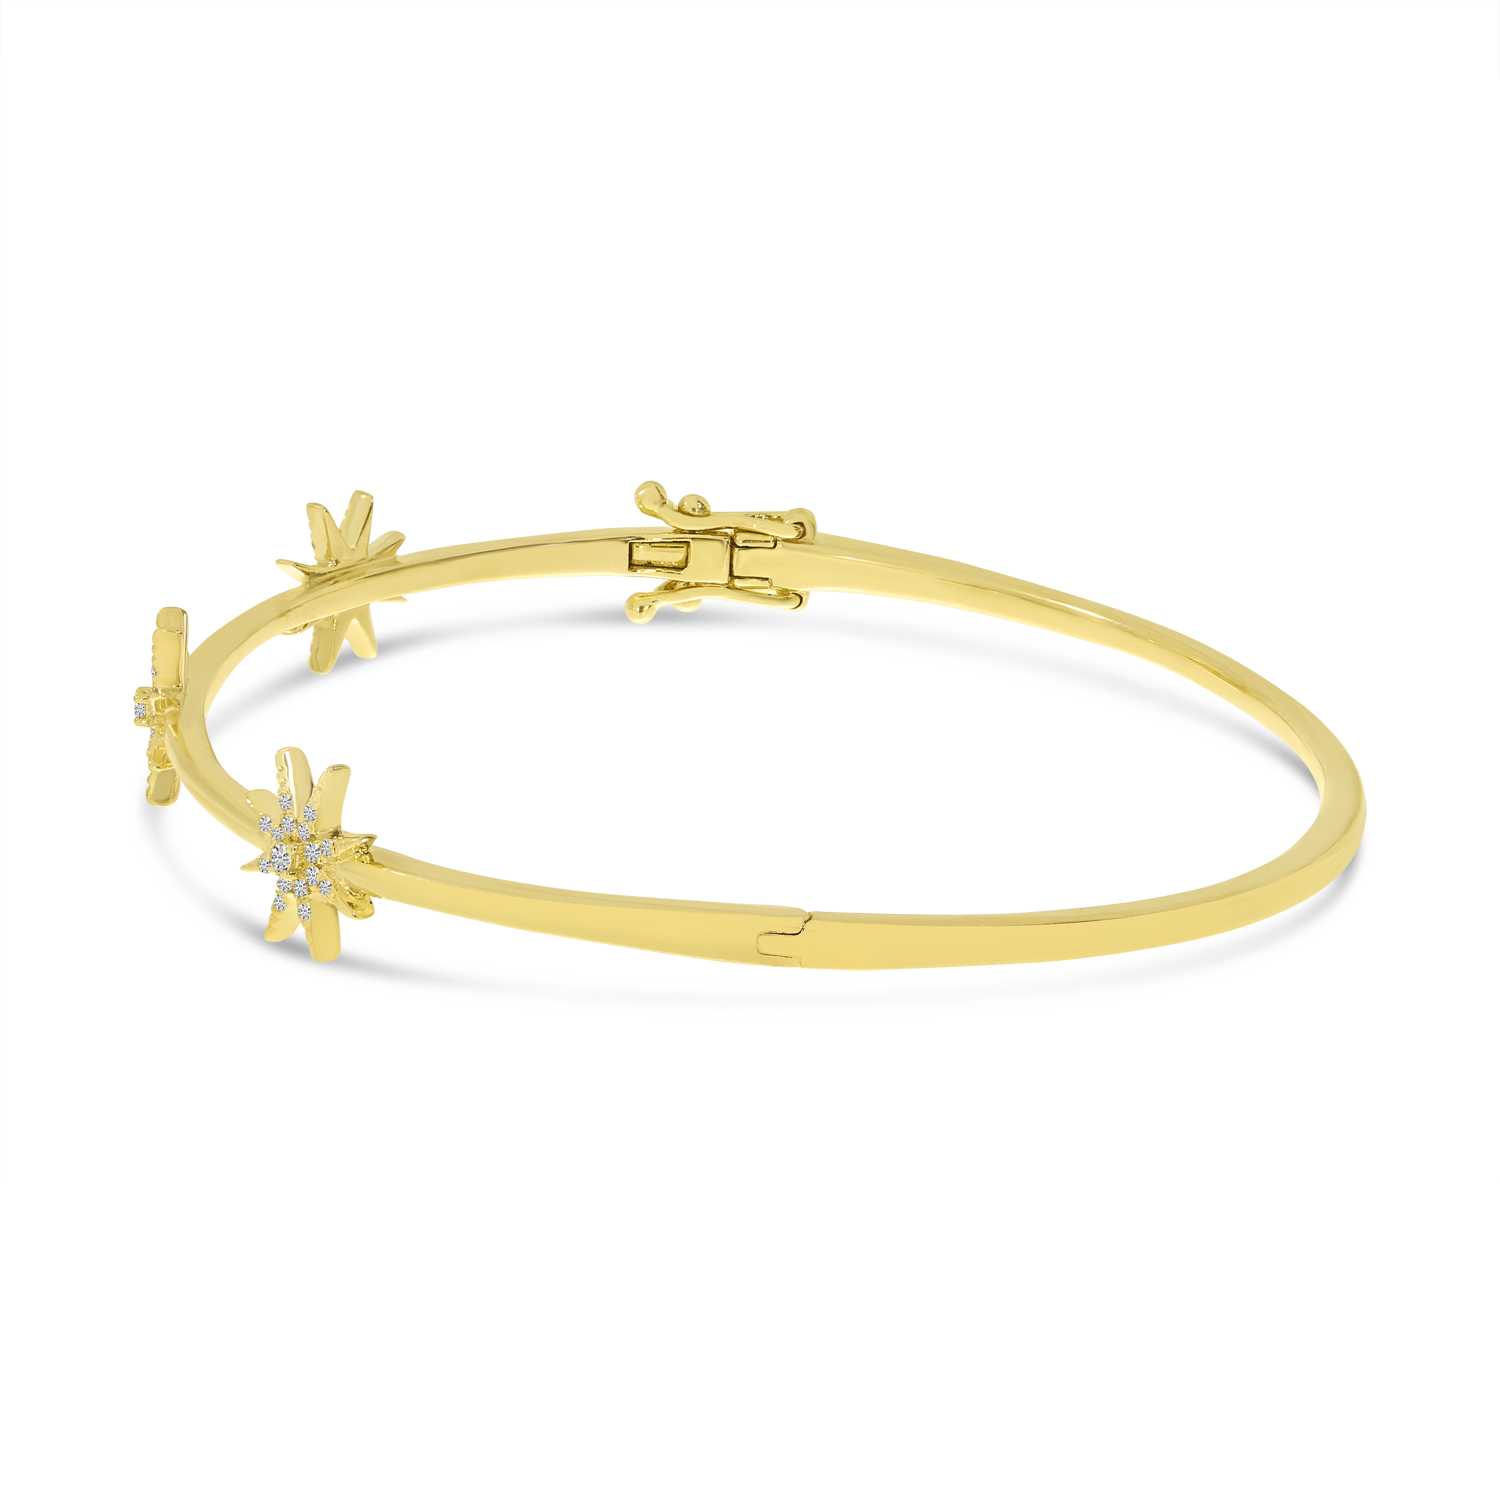 Colormerchants - 14K Yellow Gold Diamond Star Bangle Bracelet